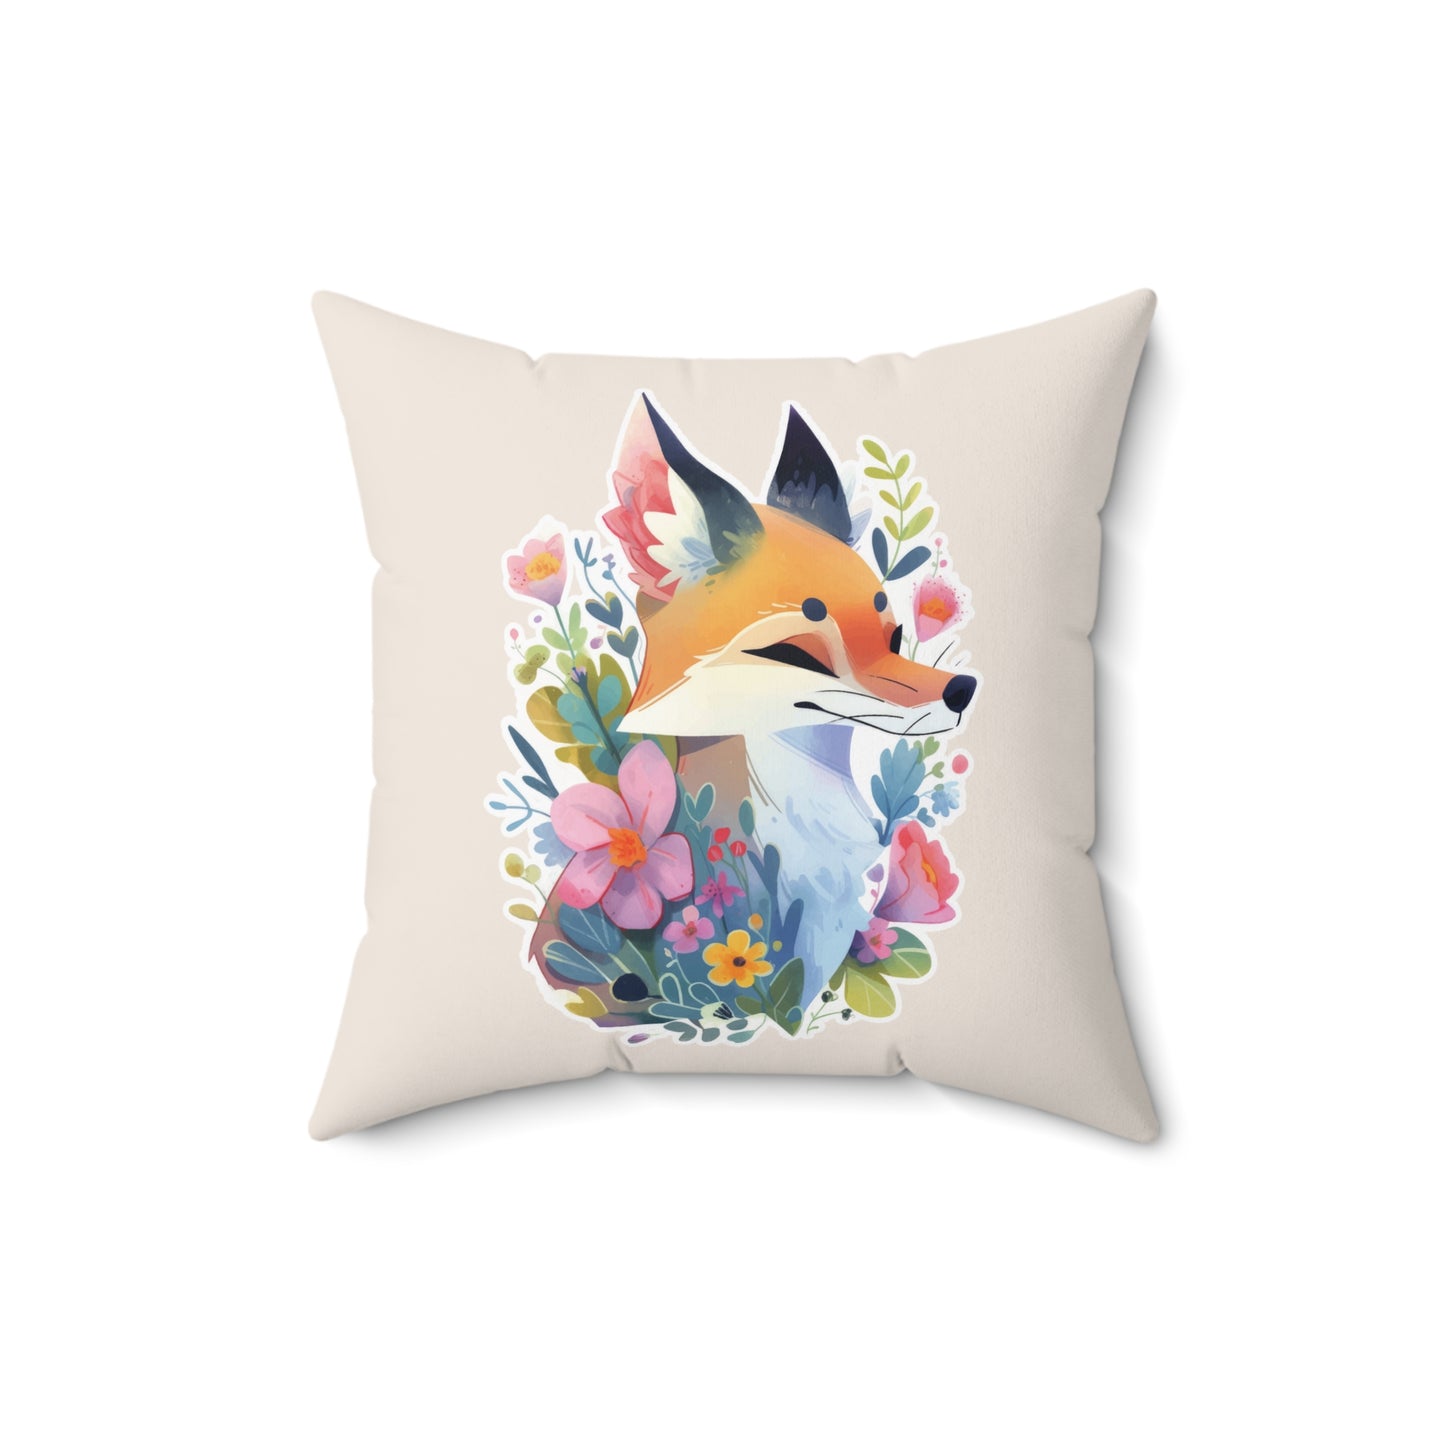 Cute Fox Watercolor Square Pillow